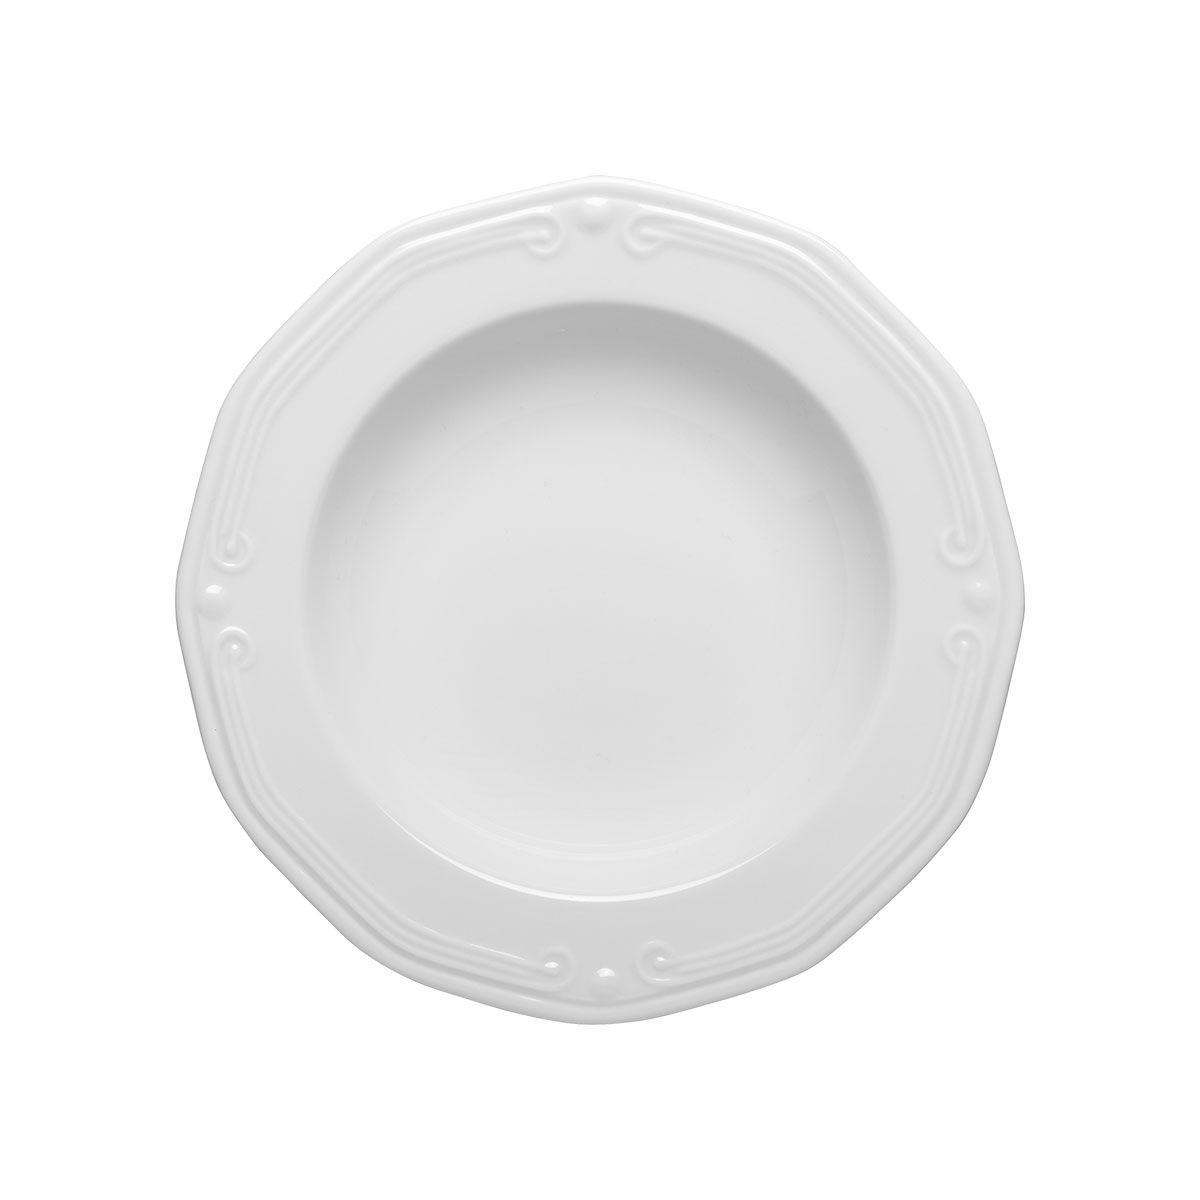 Πιάτο Φαγητού Βαθύ Πορσελάνης Ανάγλυφο White 23εκ. Athenee Estia 07-13455 (Σετ 6 Τεμάχια) (Υλικό: Πορσελάνη, Χρώμα: Λευκό, Μέγεθος: Μεμονωμένο) - estia - 07-13455